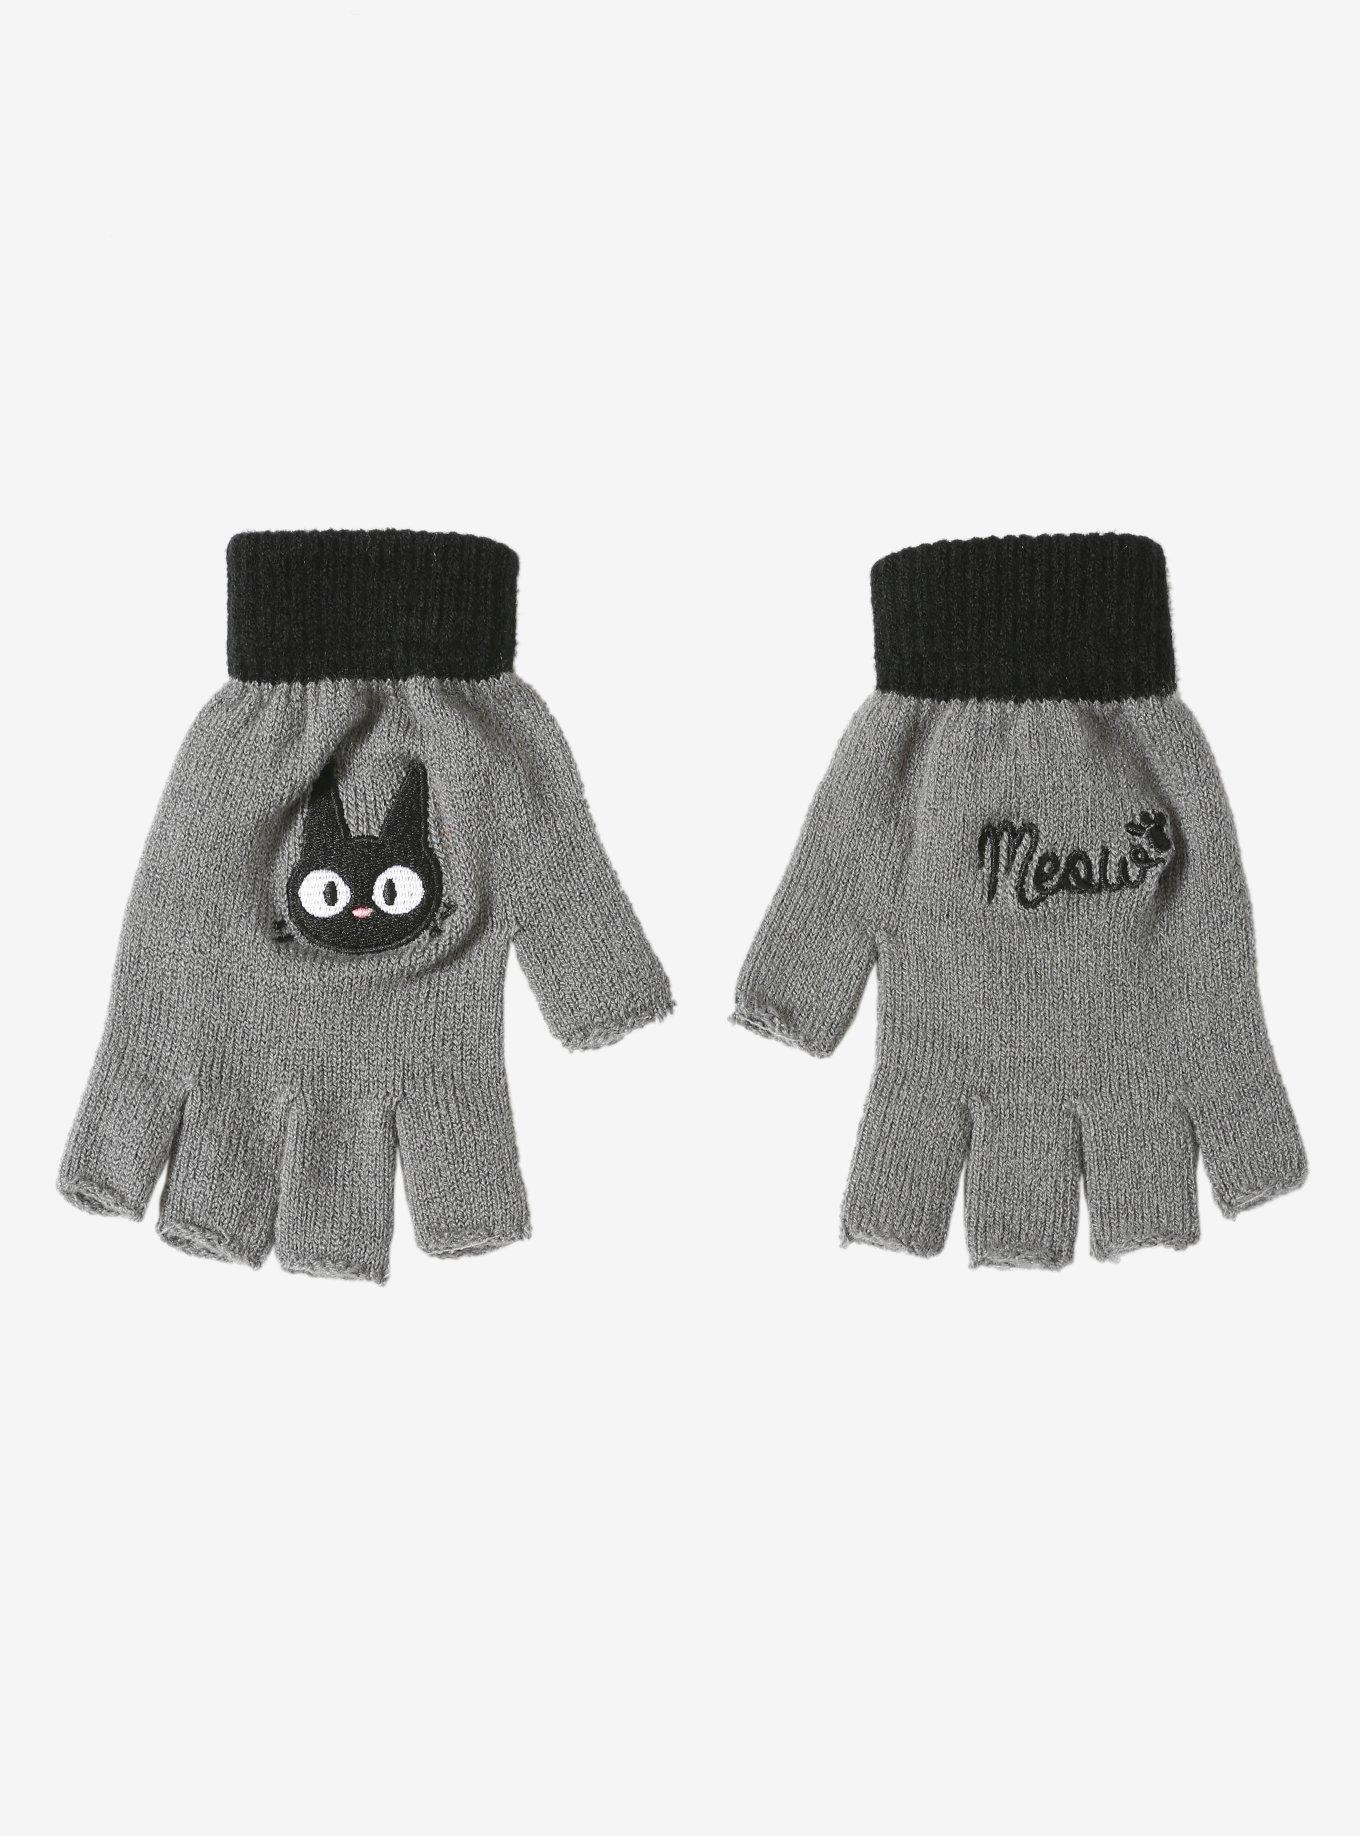 Studio Ghibli Kiki's Delivery Service Jiji Fingerless Gloves, , alternate